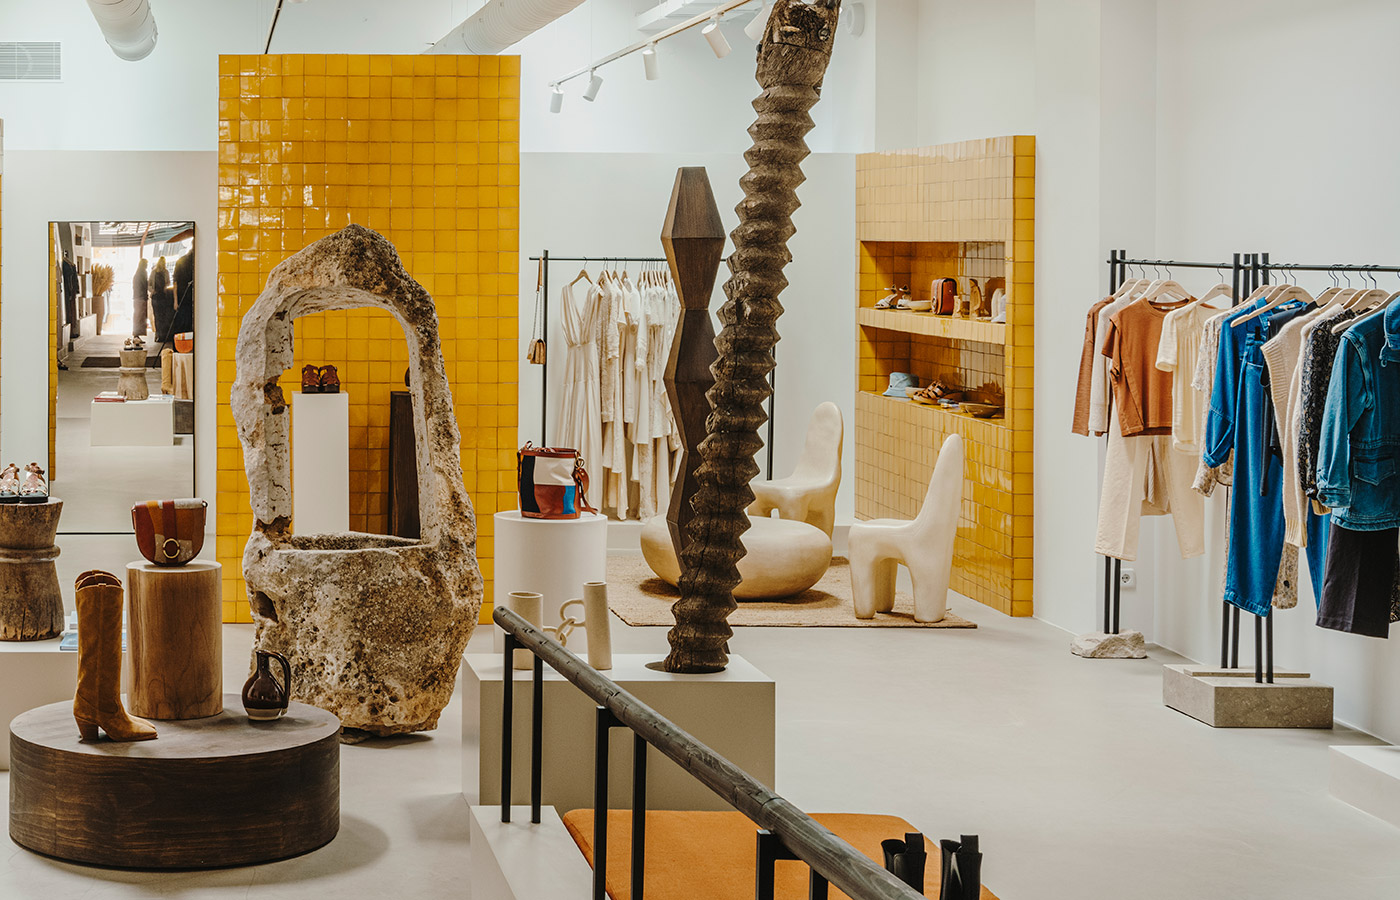 Emma François, creadora de Sessùn, ha confiado de nuevo el interiorismo de su tienda en Barcelona a Gabriel Escámez de Cobalto Studio